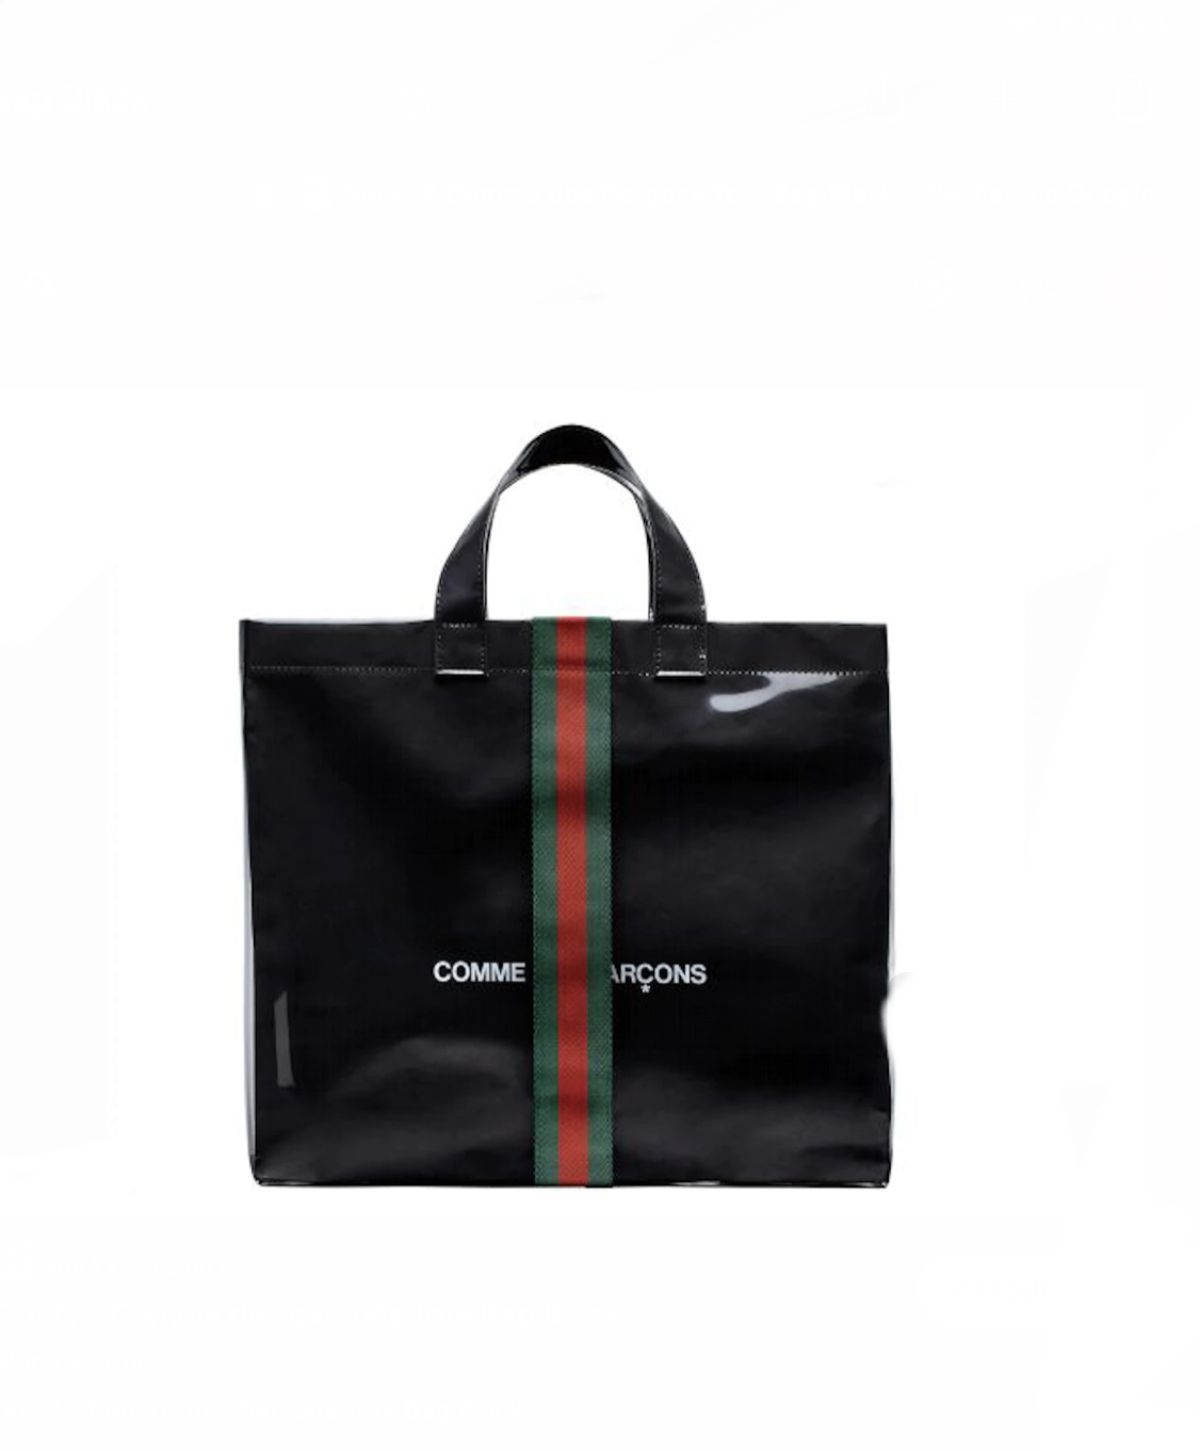 Gucci X Comme des Garçons Tote Bag Black  Cabas Noir